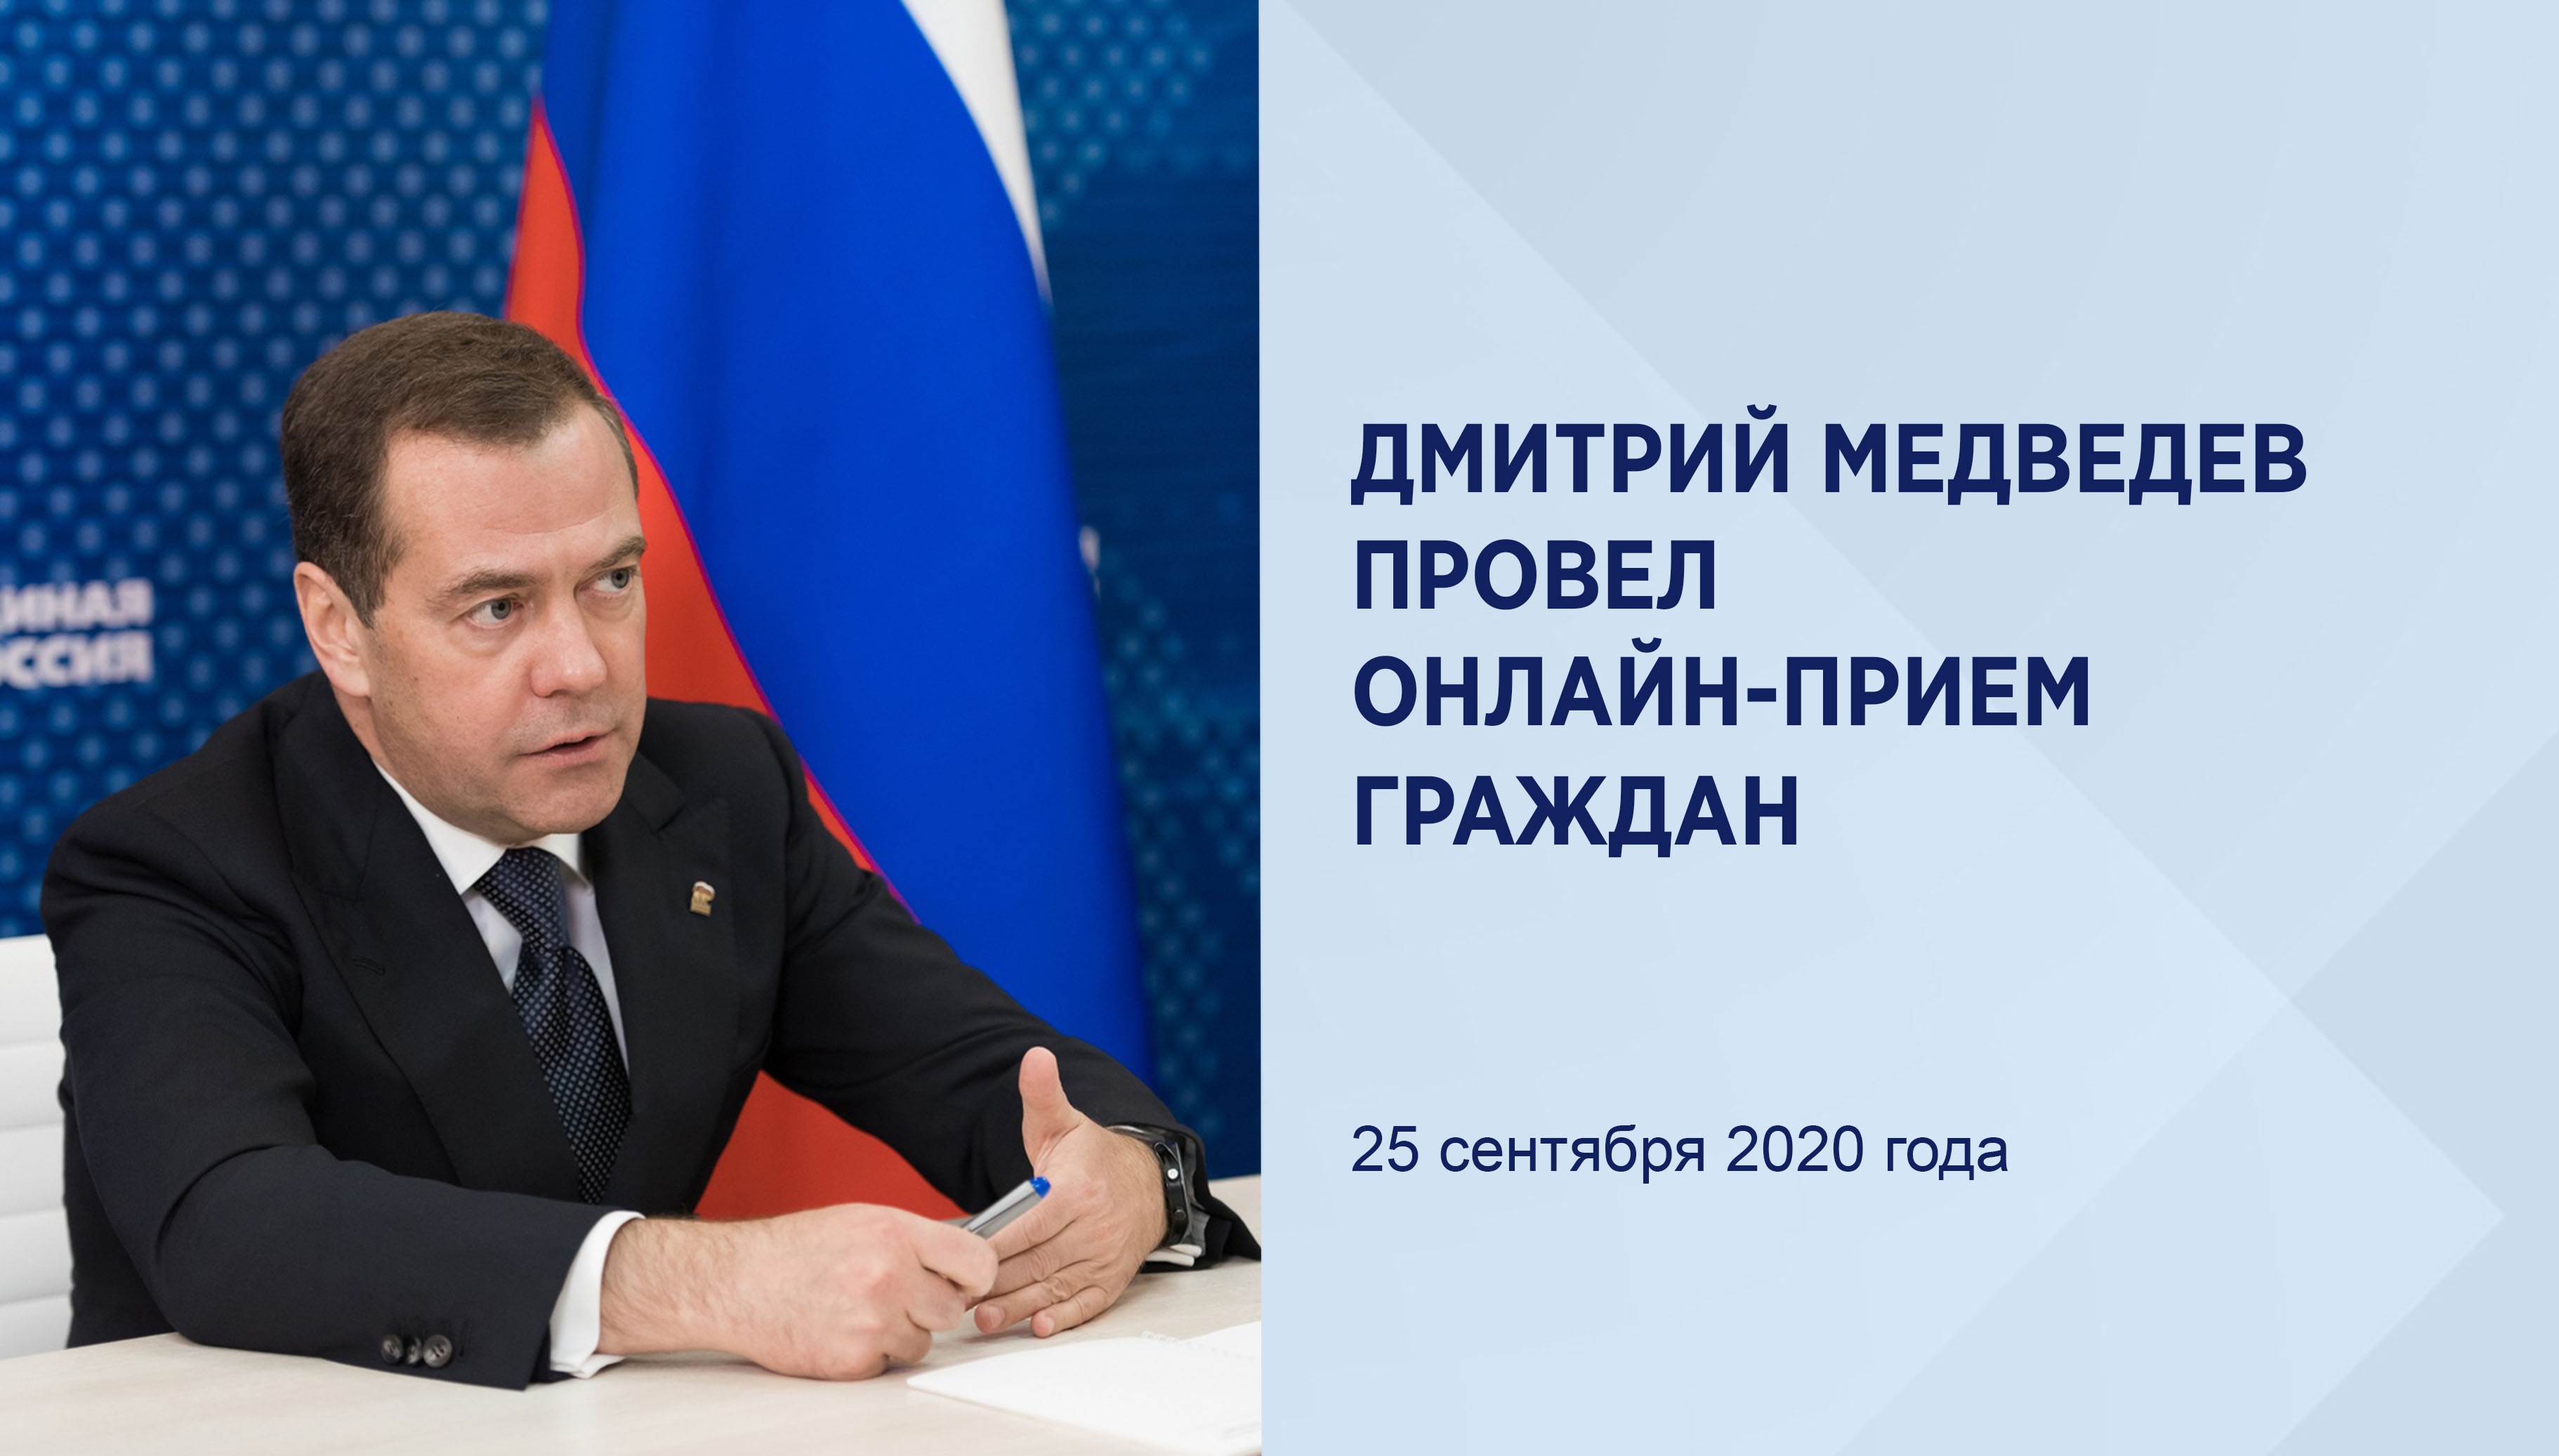 Дмитрий Медведев провел приём
граждан